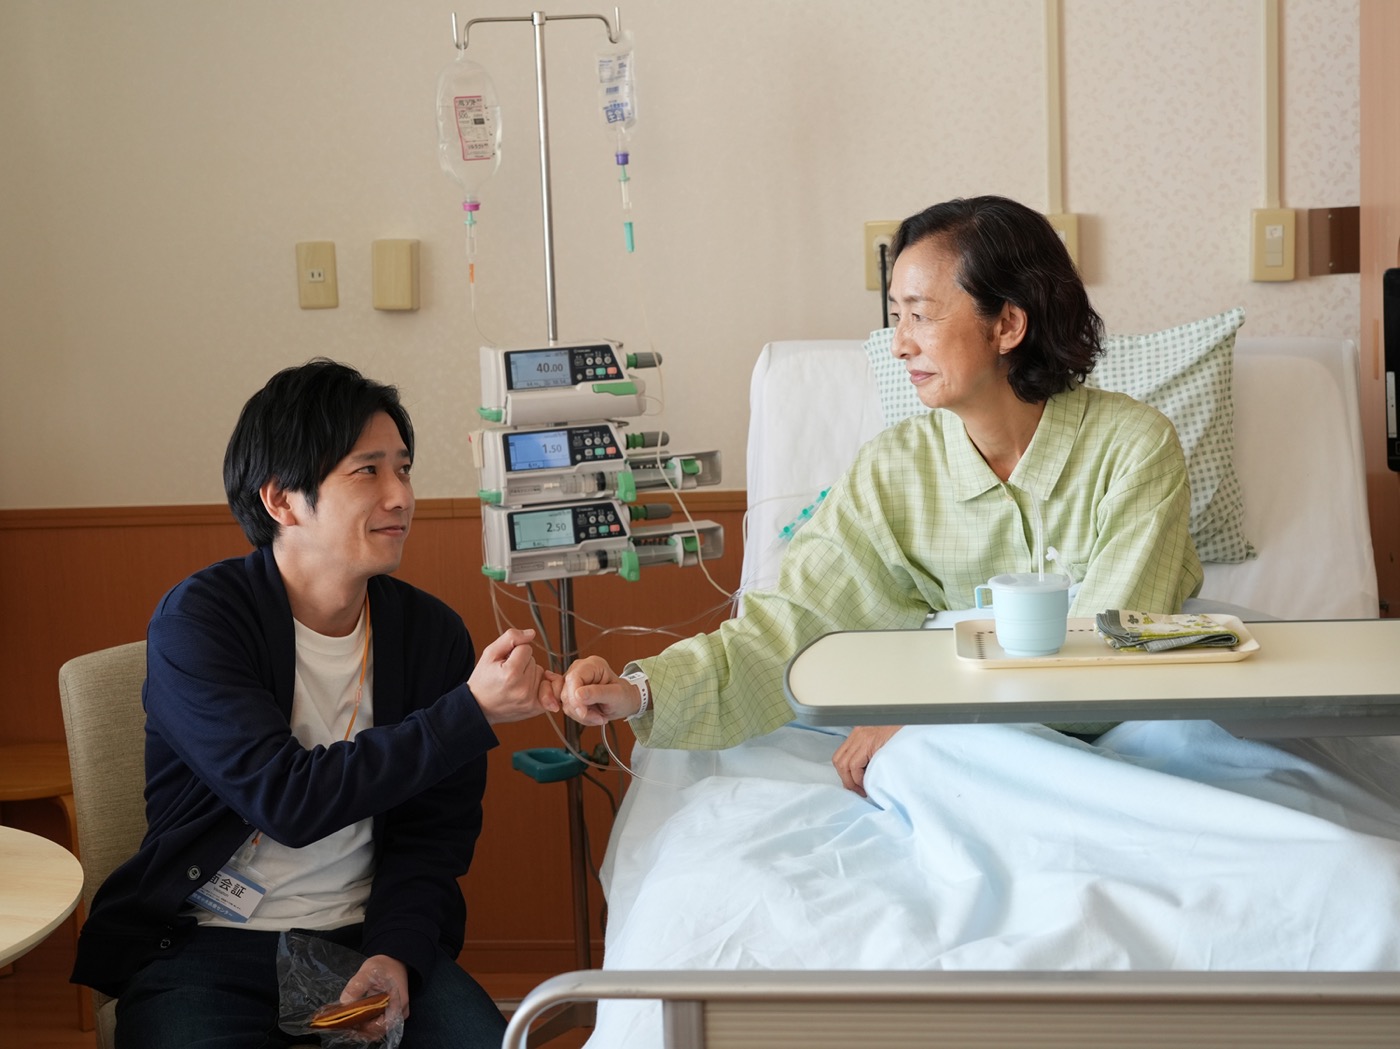 二宮和也演じる息子に、母・高橋惠子がかけた愛の言葉とは？ 映画『アナログ』本編映像解禁